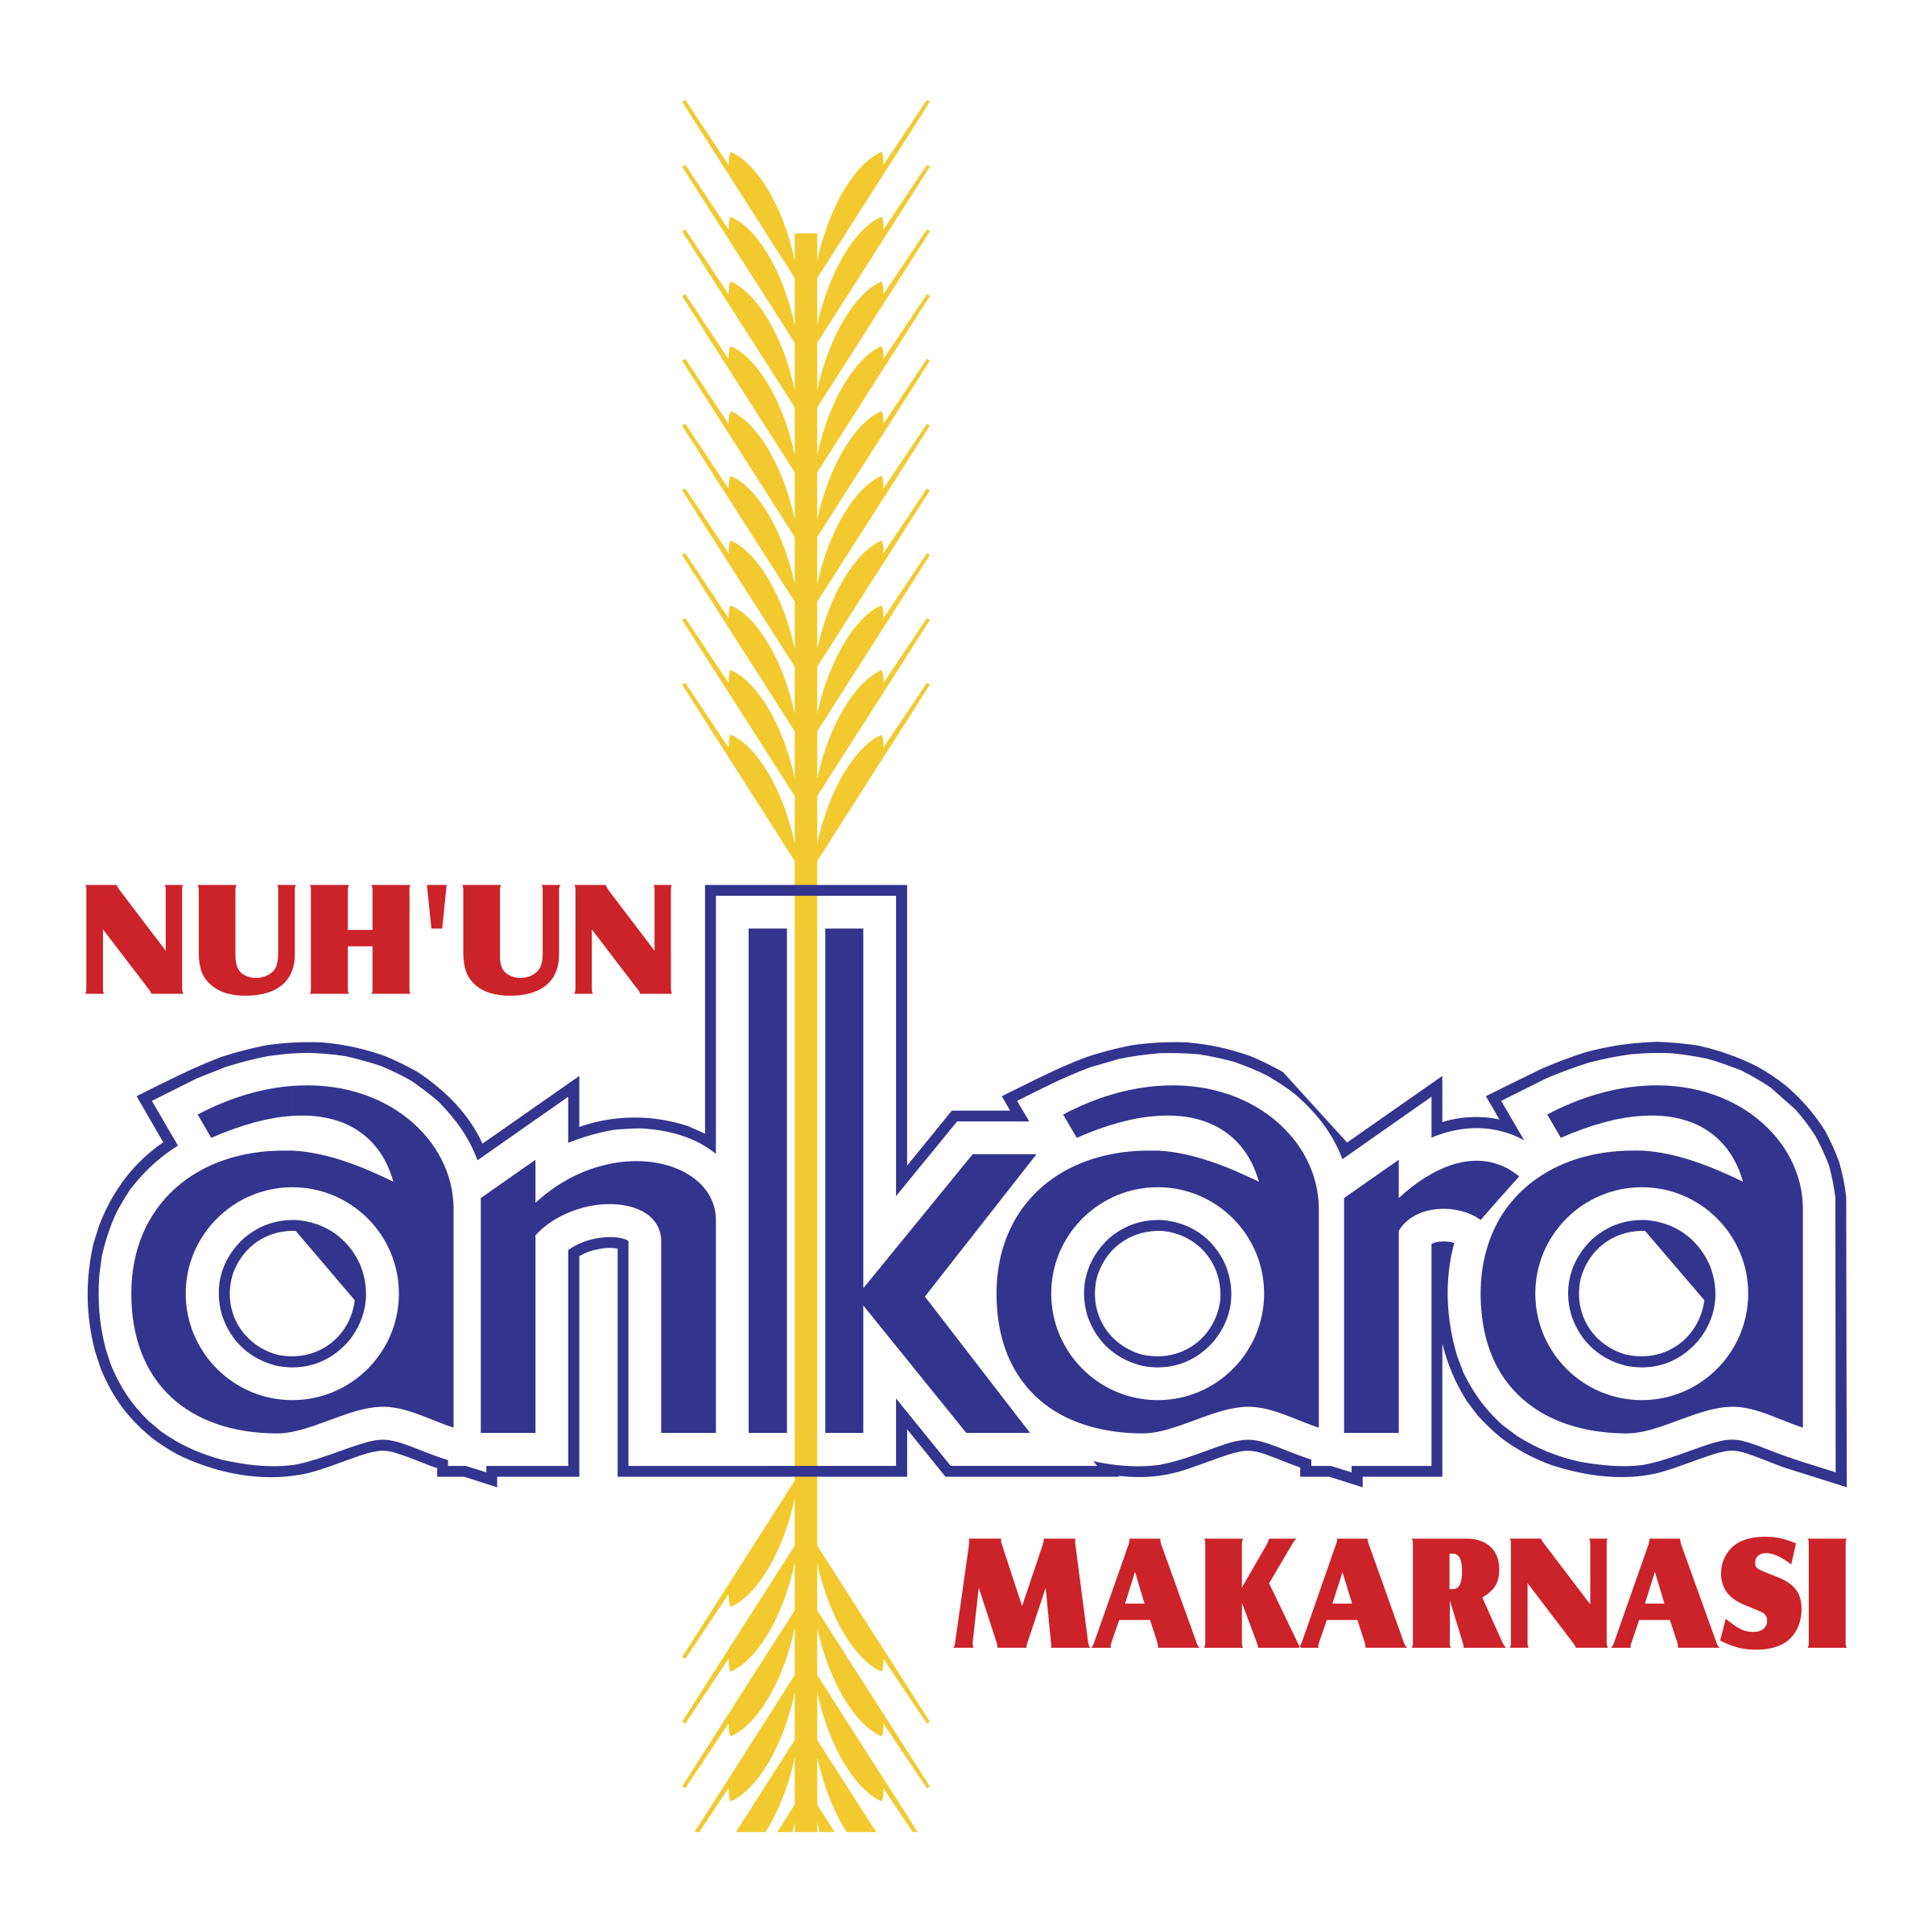 Ankara Logo - Nuh'un Ankara Makarnasi Logo PNG Transparent & SVG Vector - Freebie ...